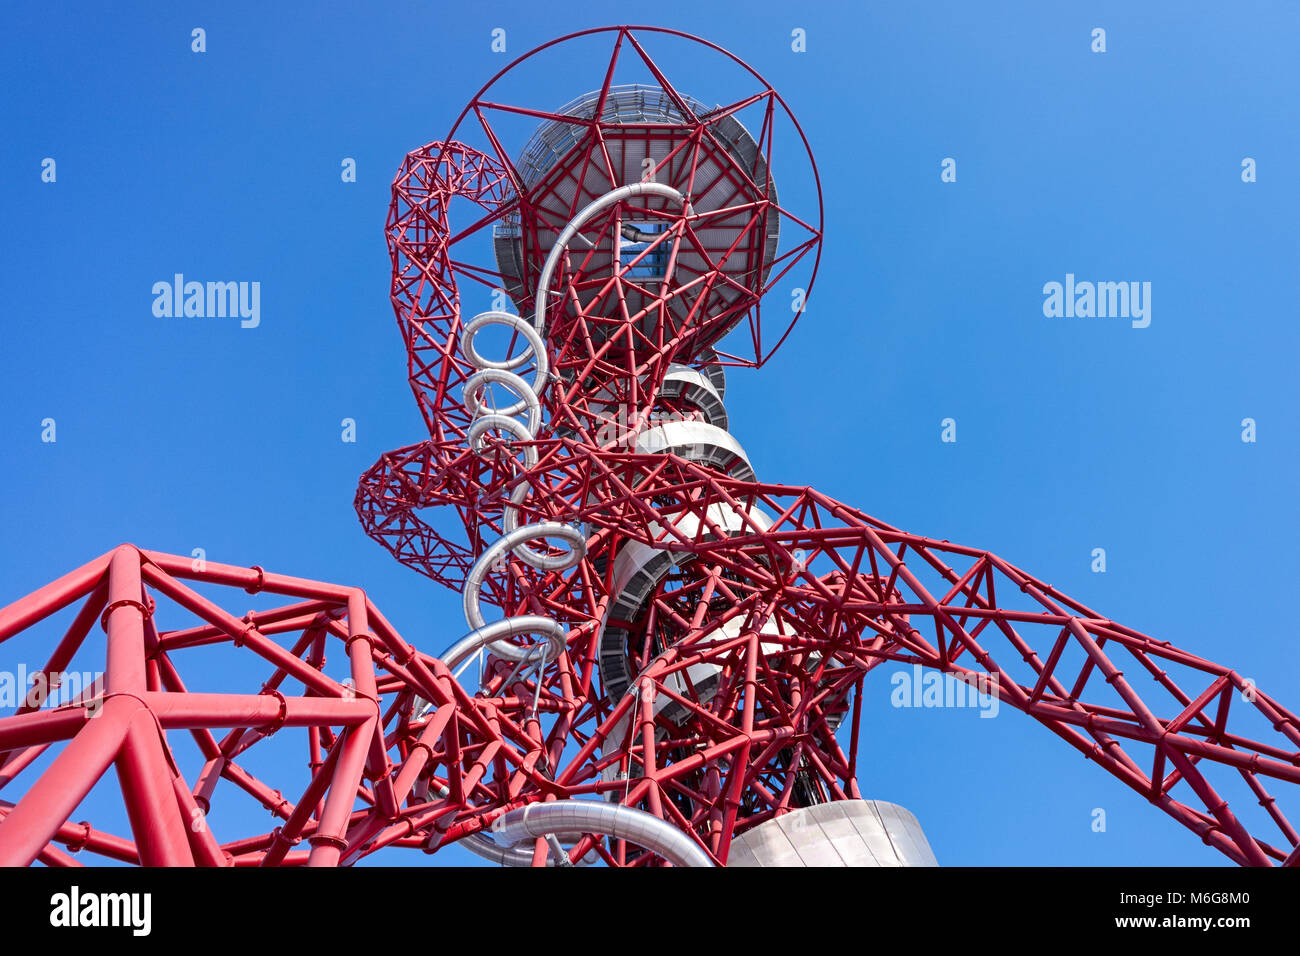 ArcelorMittal Orbit sculpture au Queen Elizabeth Olympic Park de Londres Angleterre Royaume-Uni UK Banque D'Images